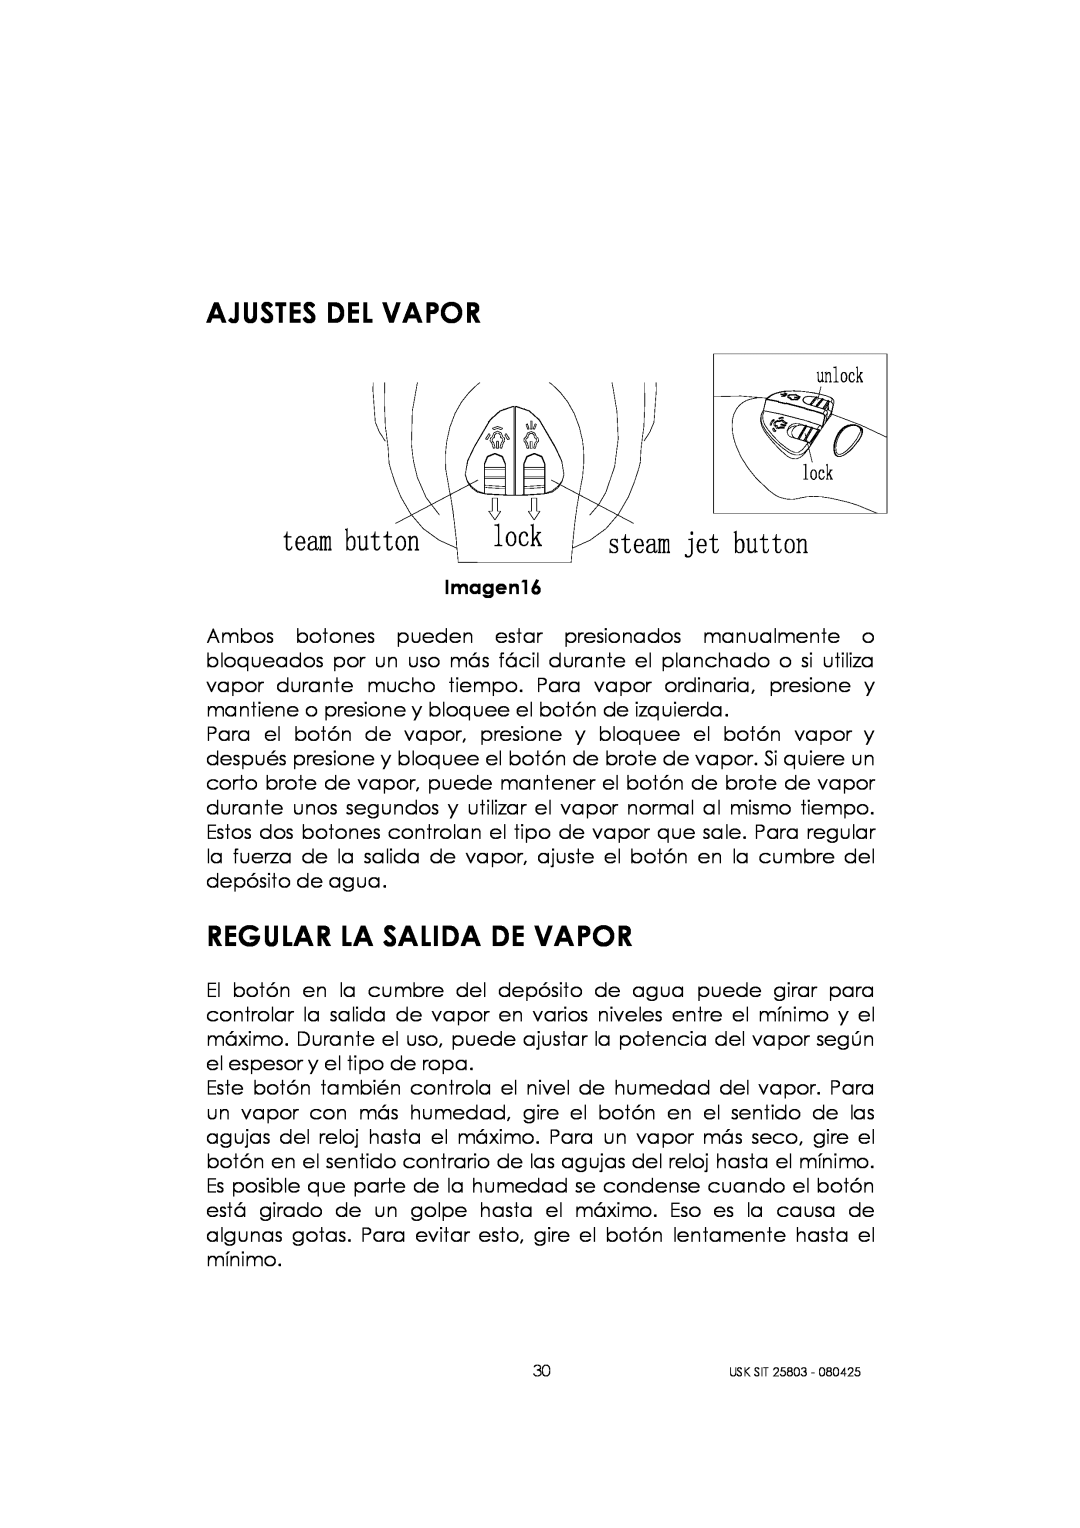 Kalorik USK SIT 25803 manual Ajustes Del Vapor, Regular La Salida De Vapor 